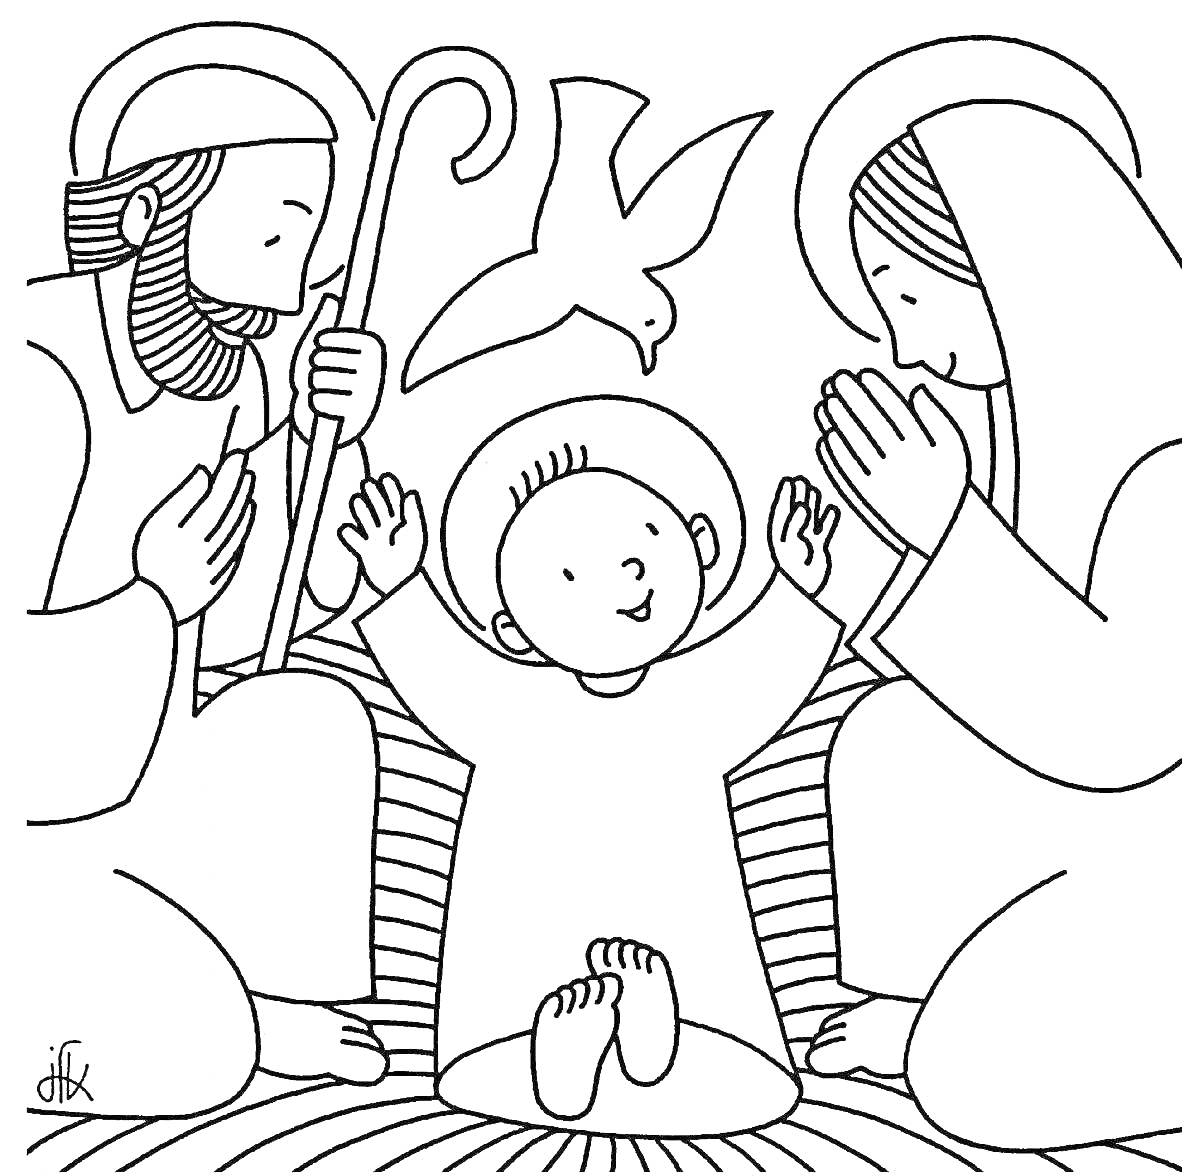 Святое семейство с младенцем Иисусом, Марией и Иосифом с голубем